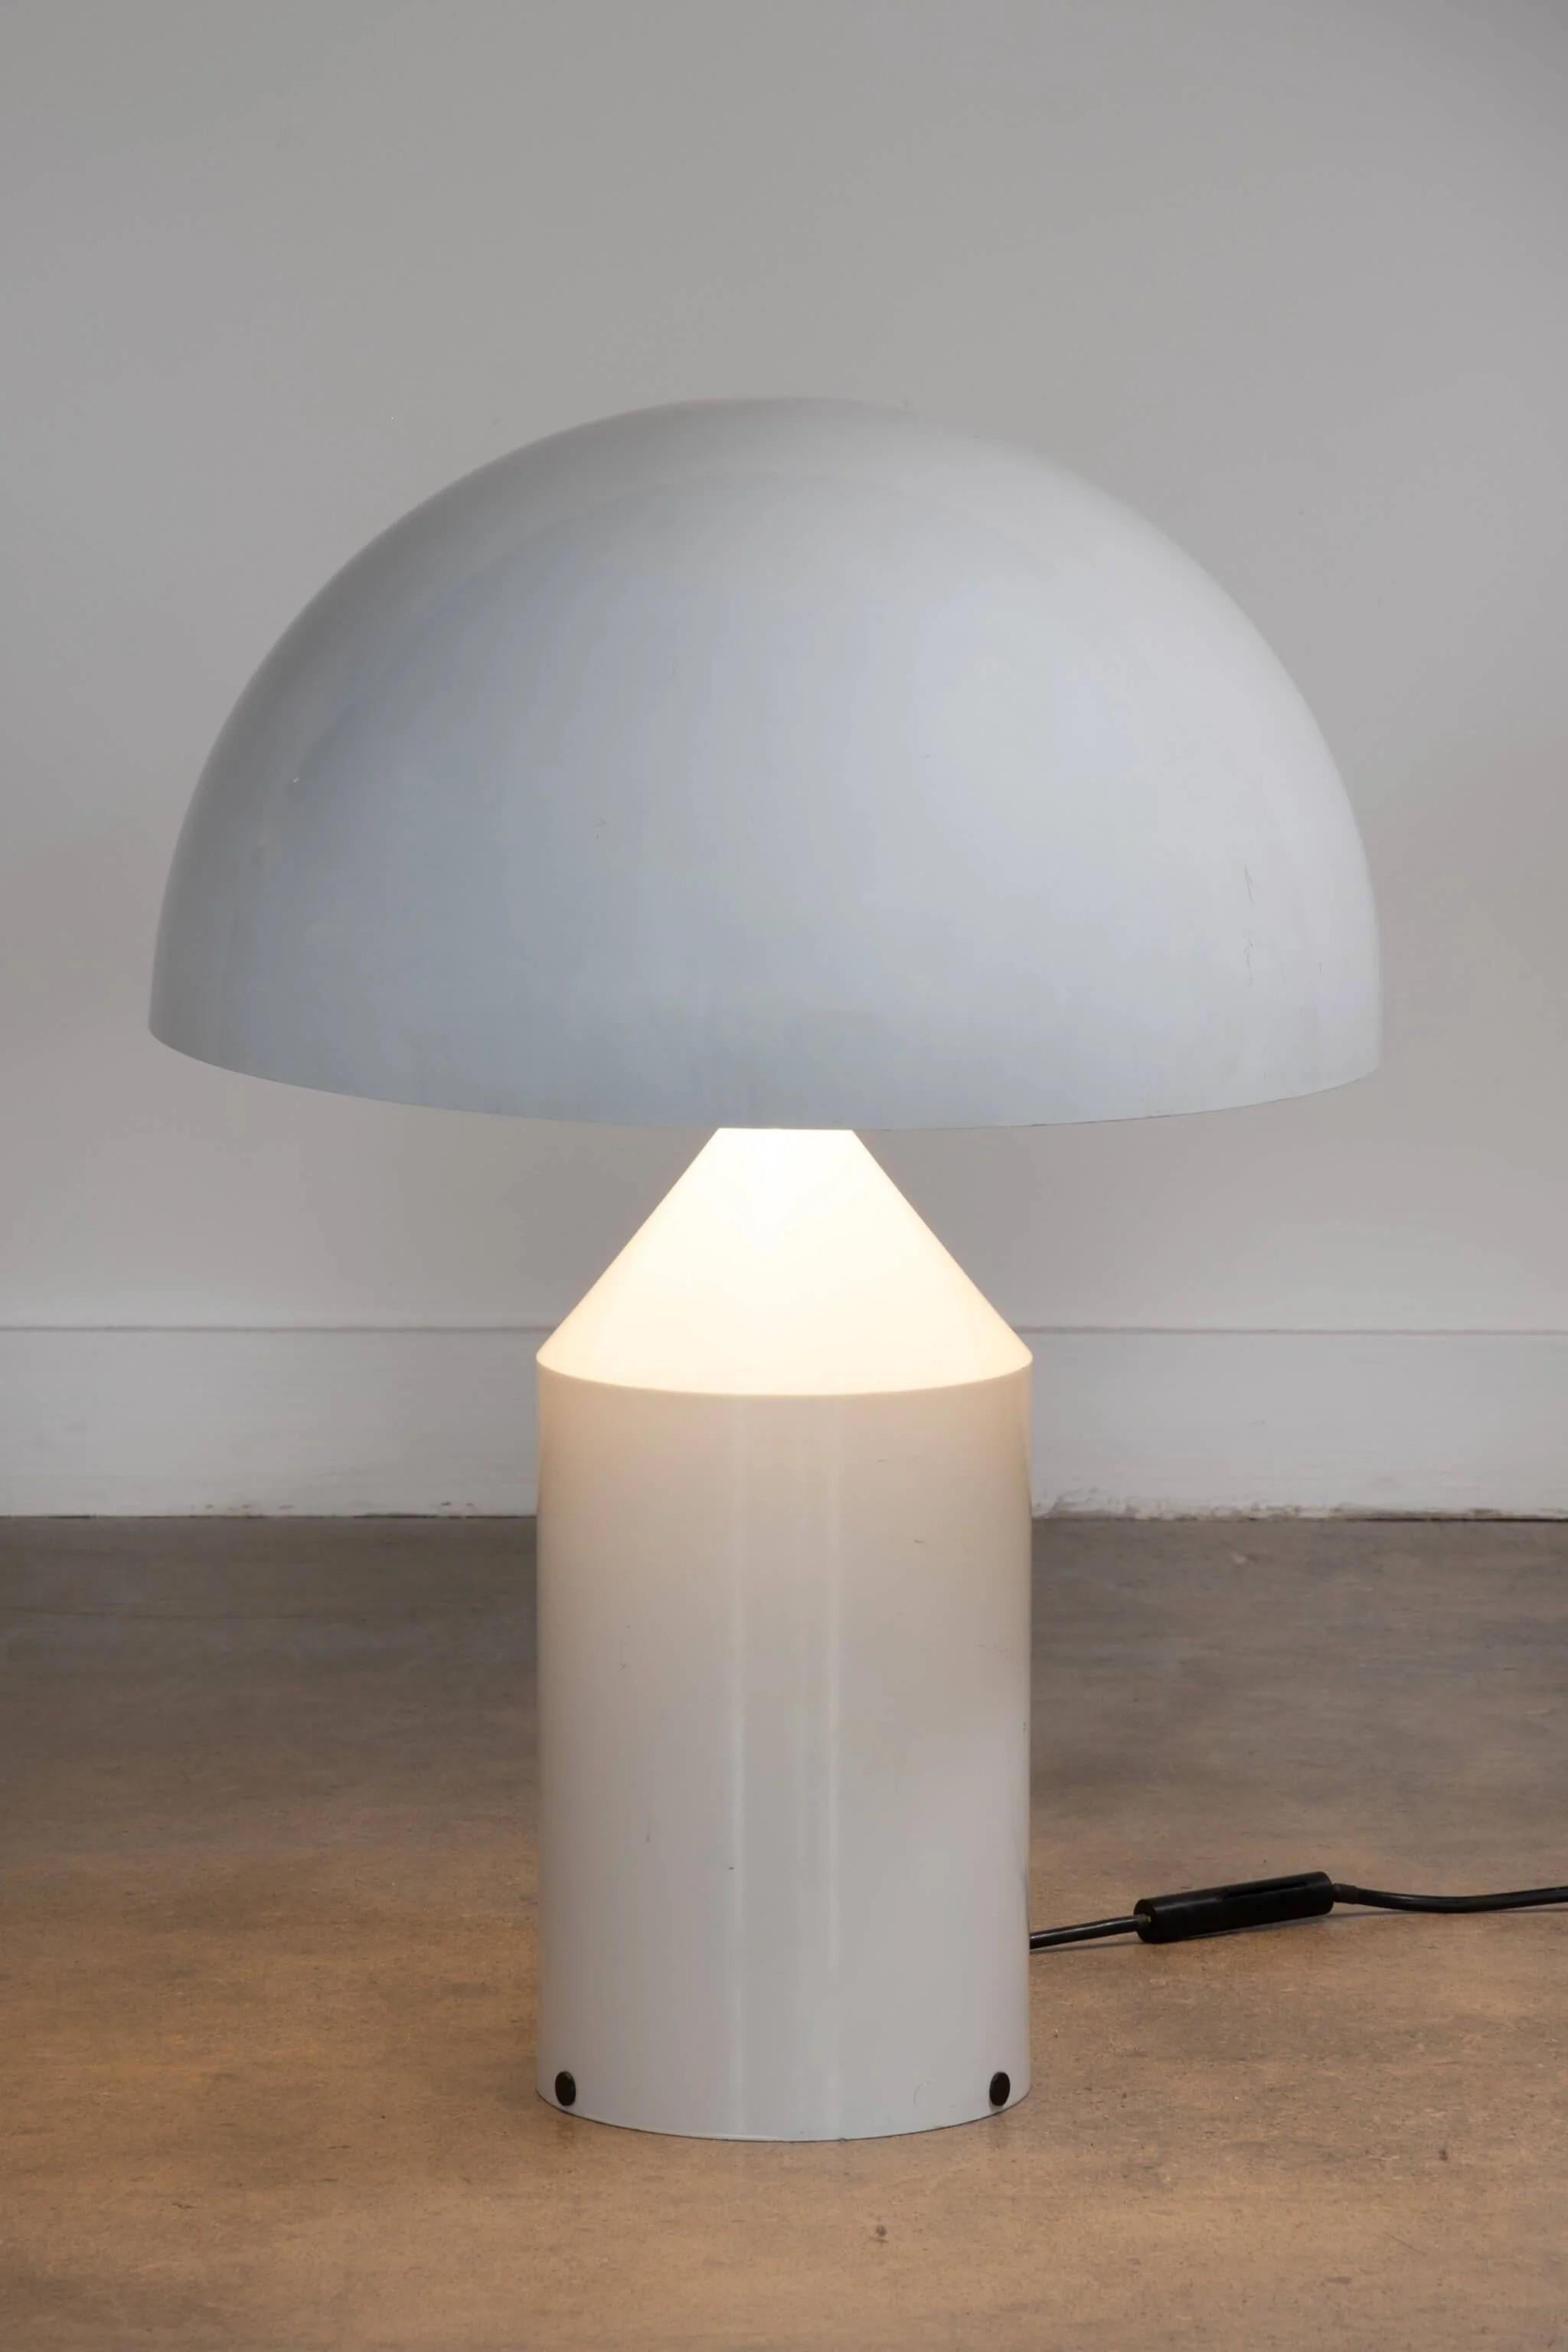 Icône du design italien de Vico Magistretti, la lampe à poser 'Atollo' est un produit à la fois décoratif et fonctionnel. Réalisée en aluminium peint, les formes géométriques qui la composent - cylindre, cône et hémisphère - sont une leçon